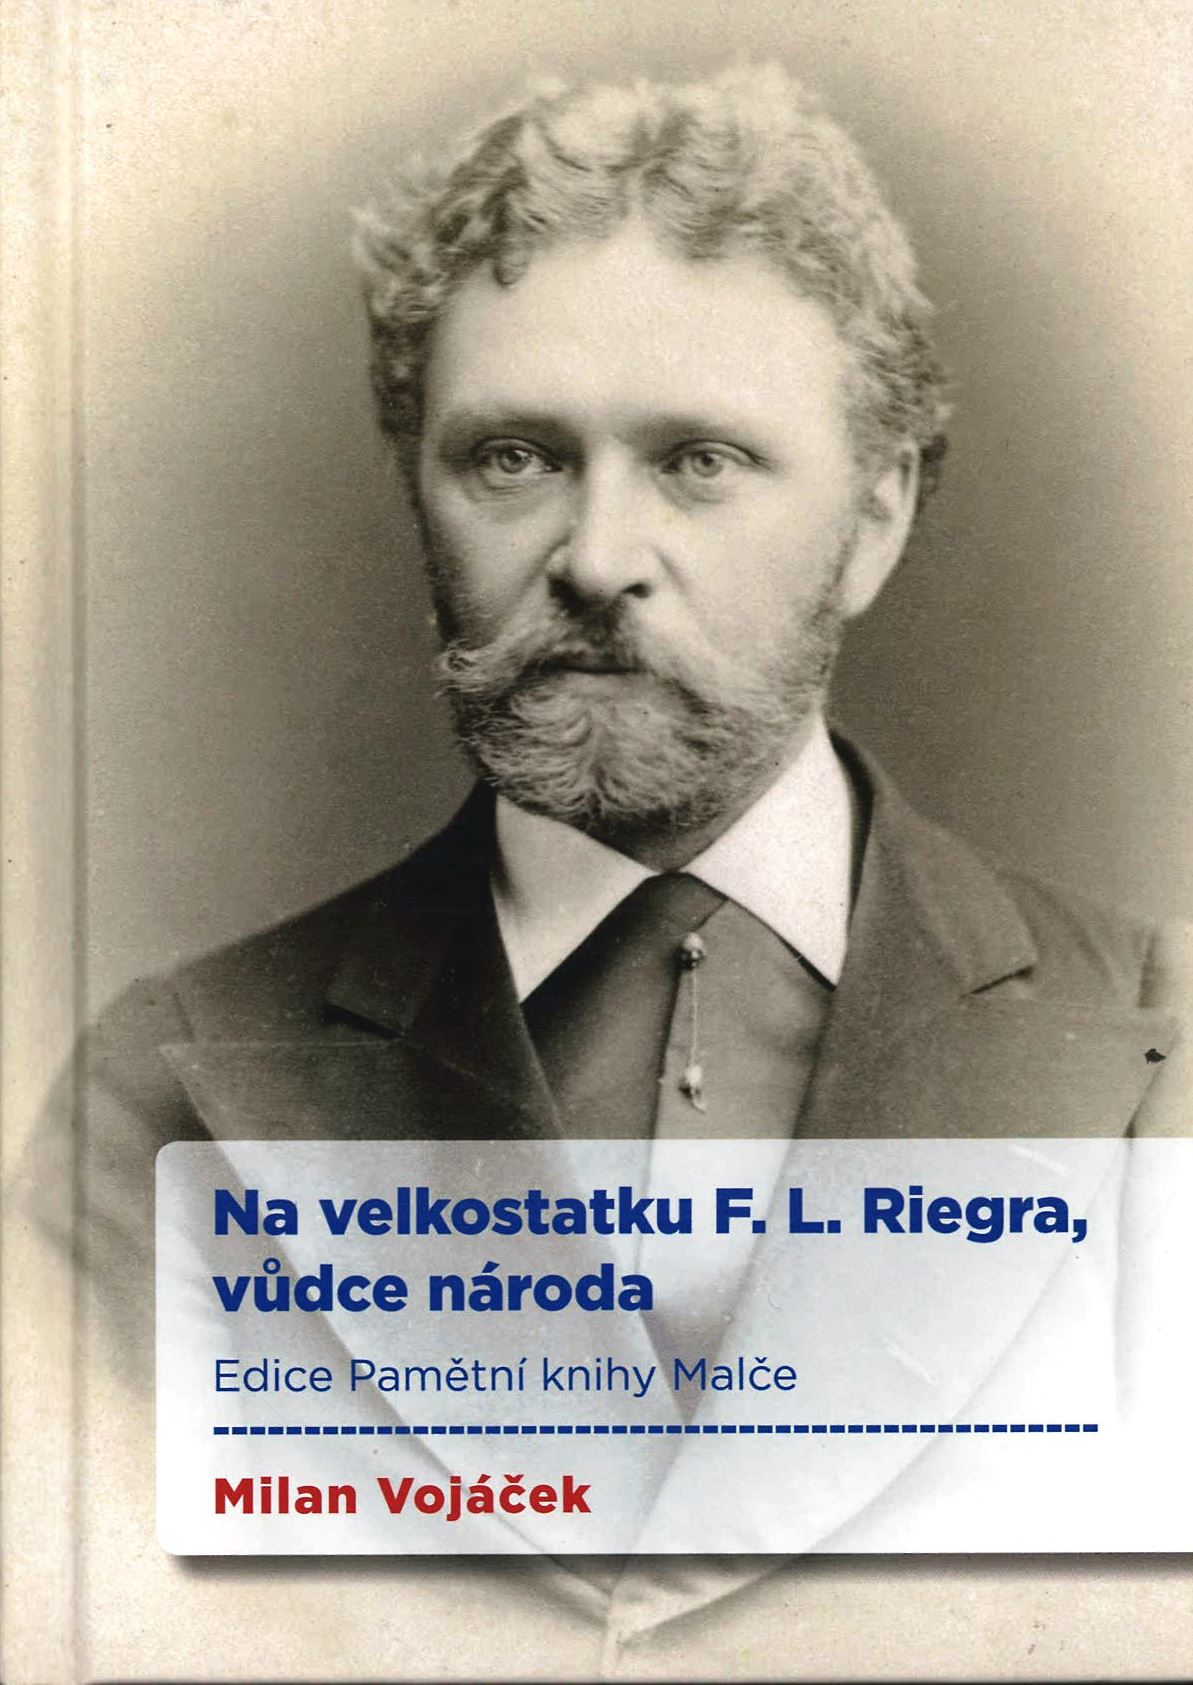 Na velkostatku F. L. Riegra, vůdce národa. Edice Pamětní knihy Malčeý